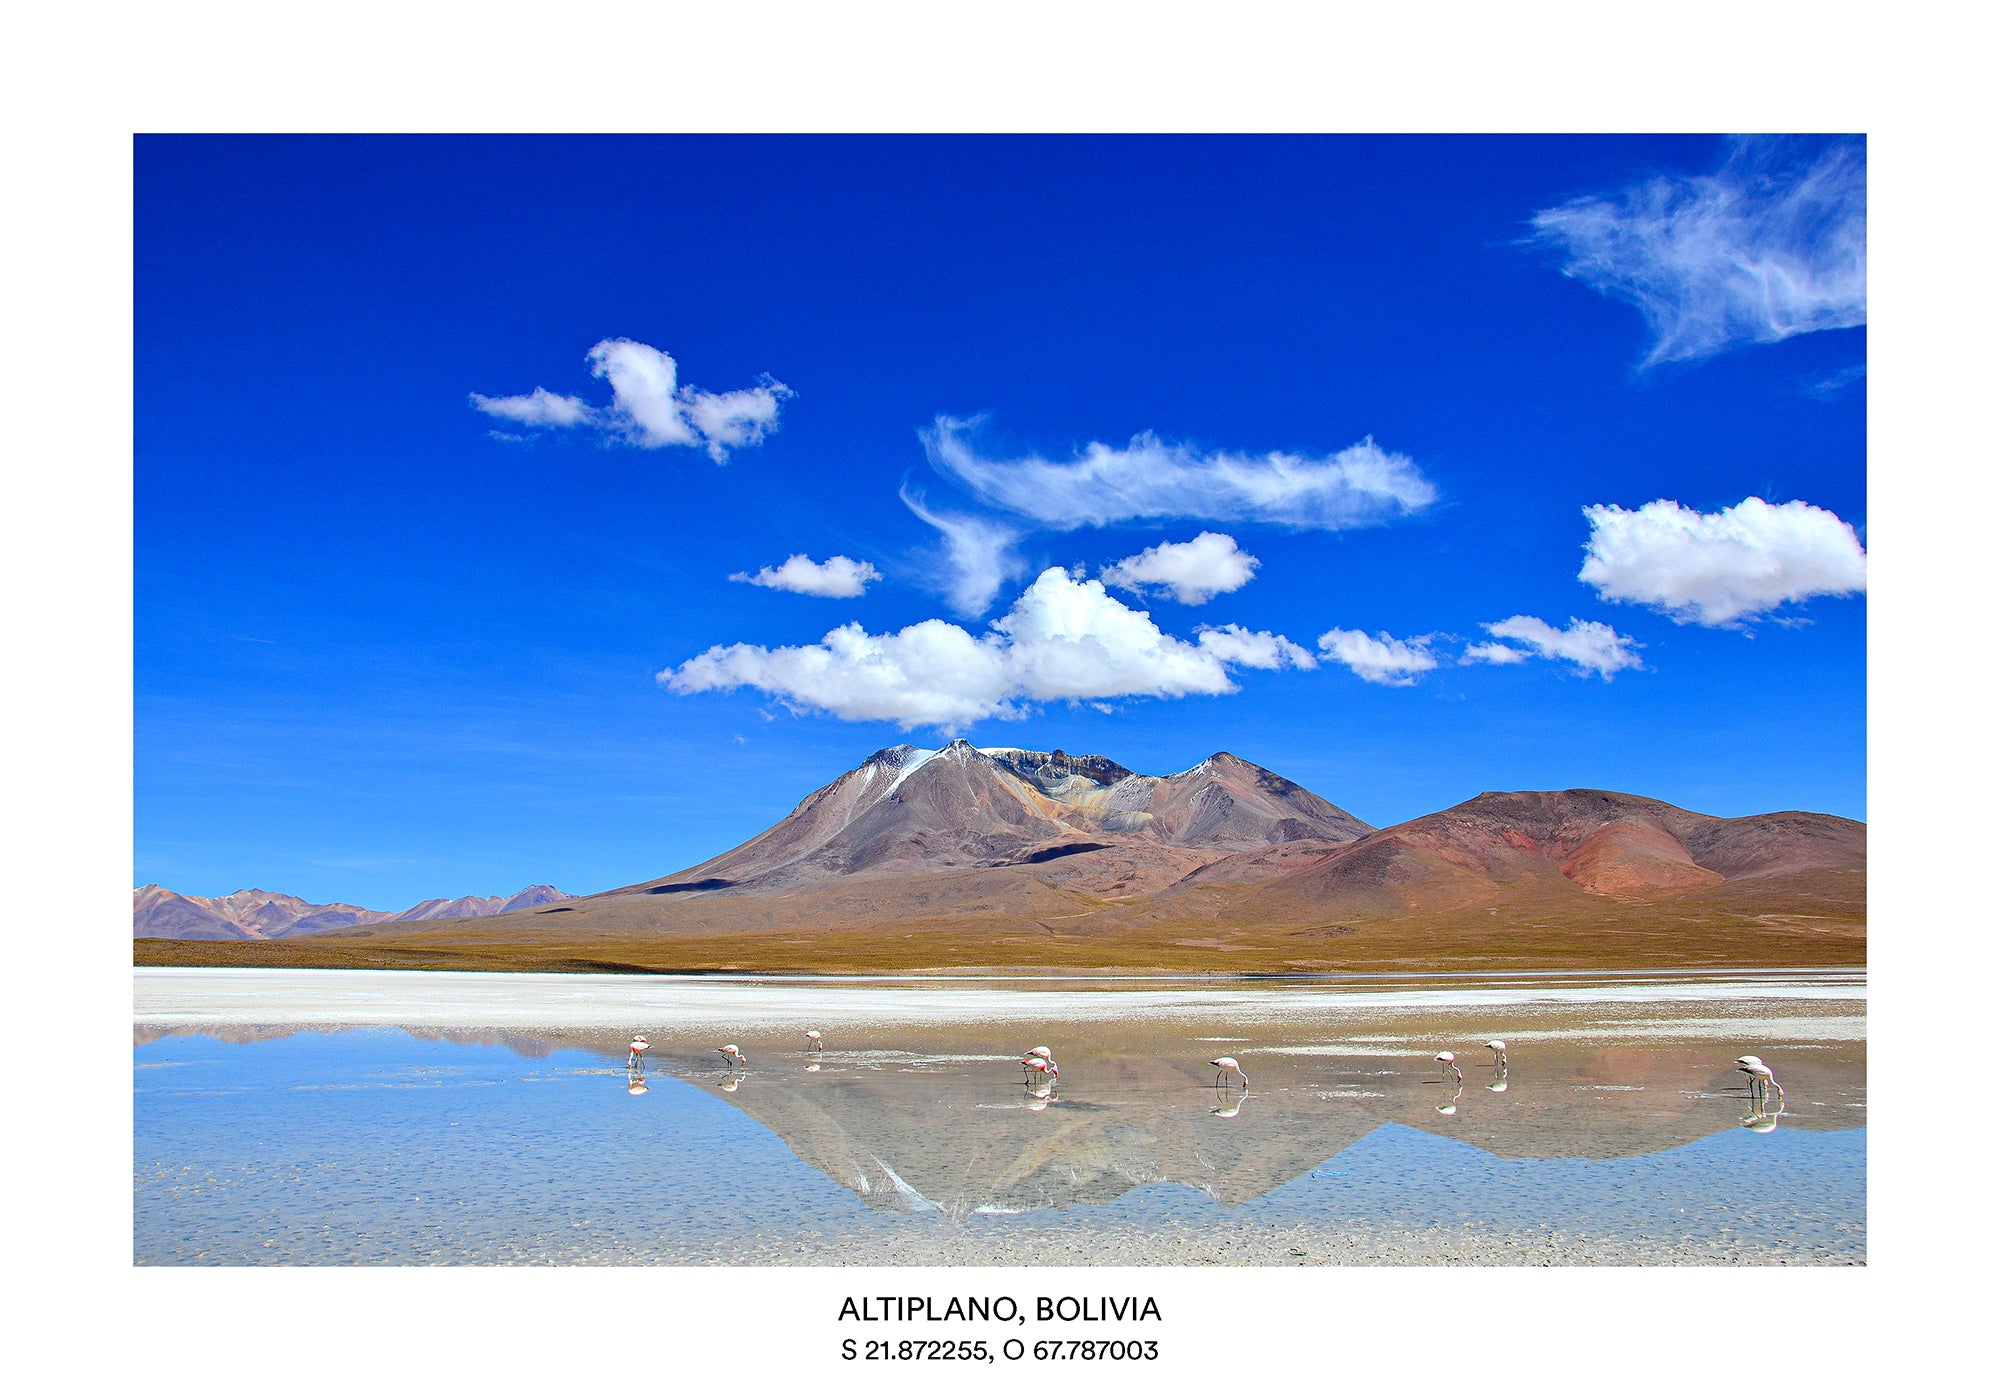 BOL - Altiplano, Bolivia